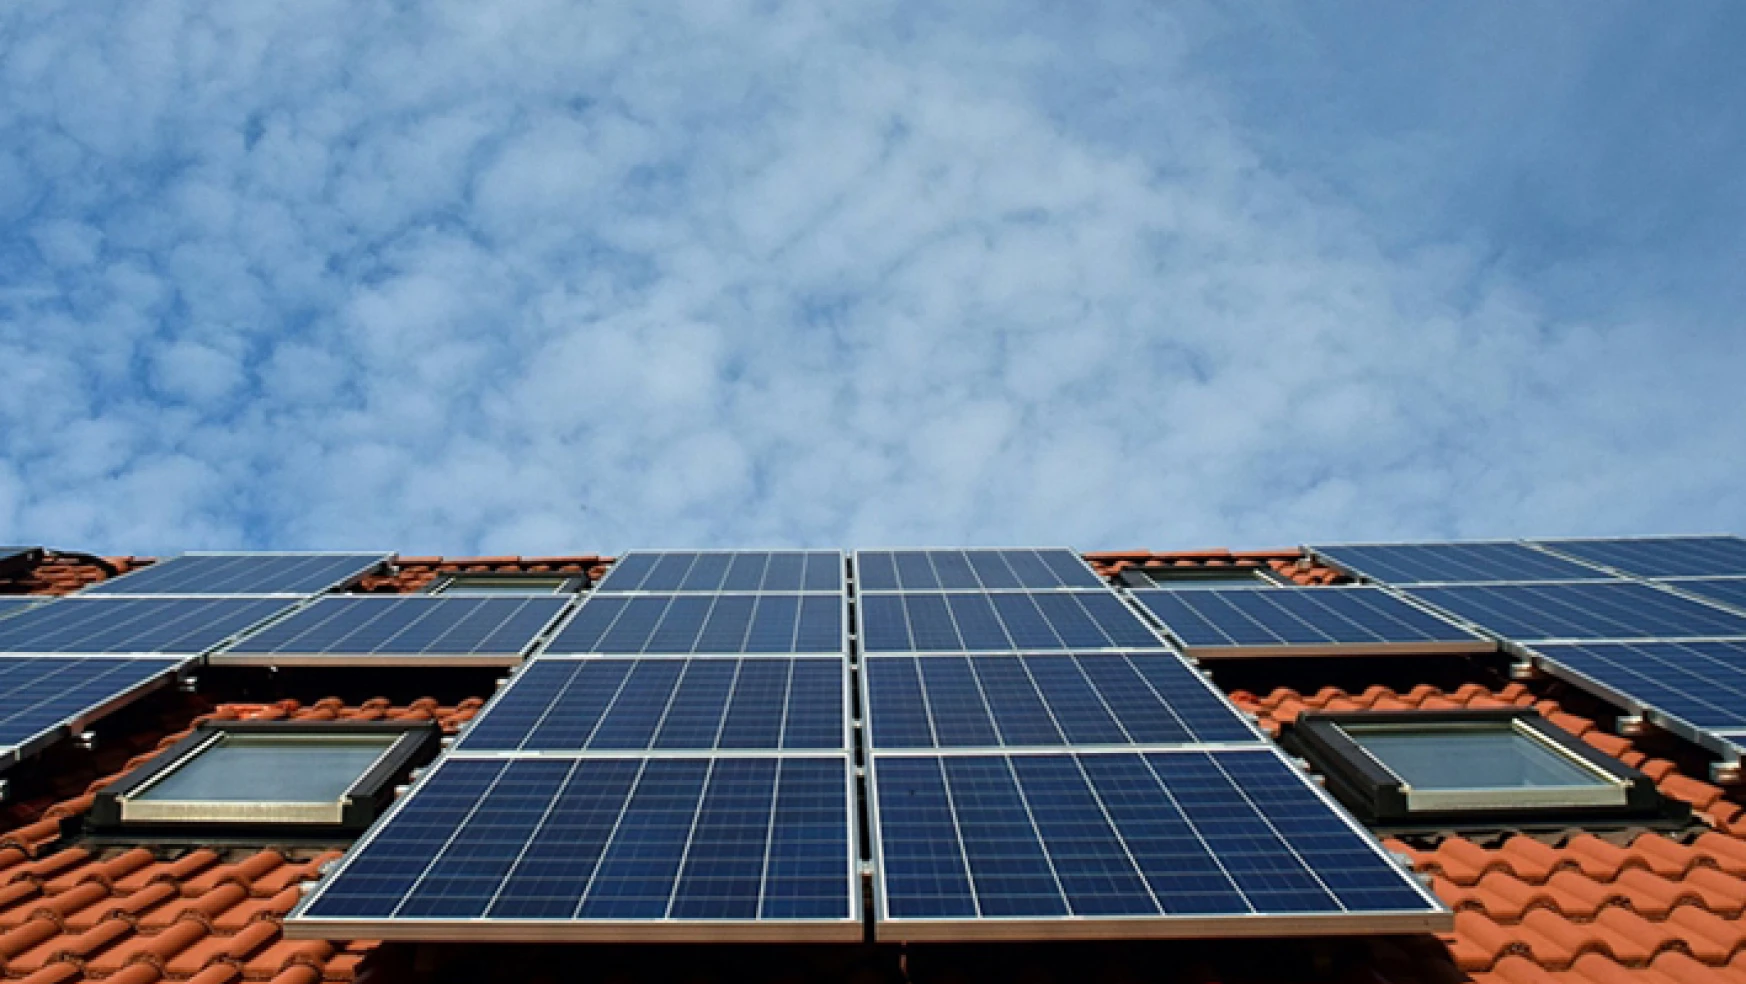 Tokyo'da 2025 sonrası yeni ev inşasında güneş paneli şartı aranacak